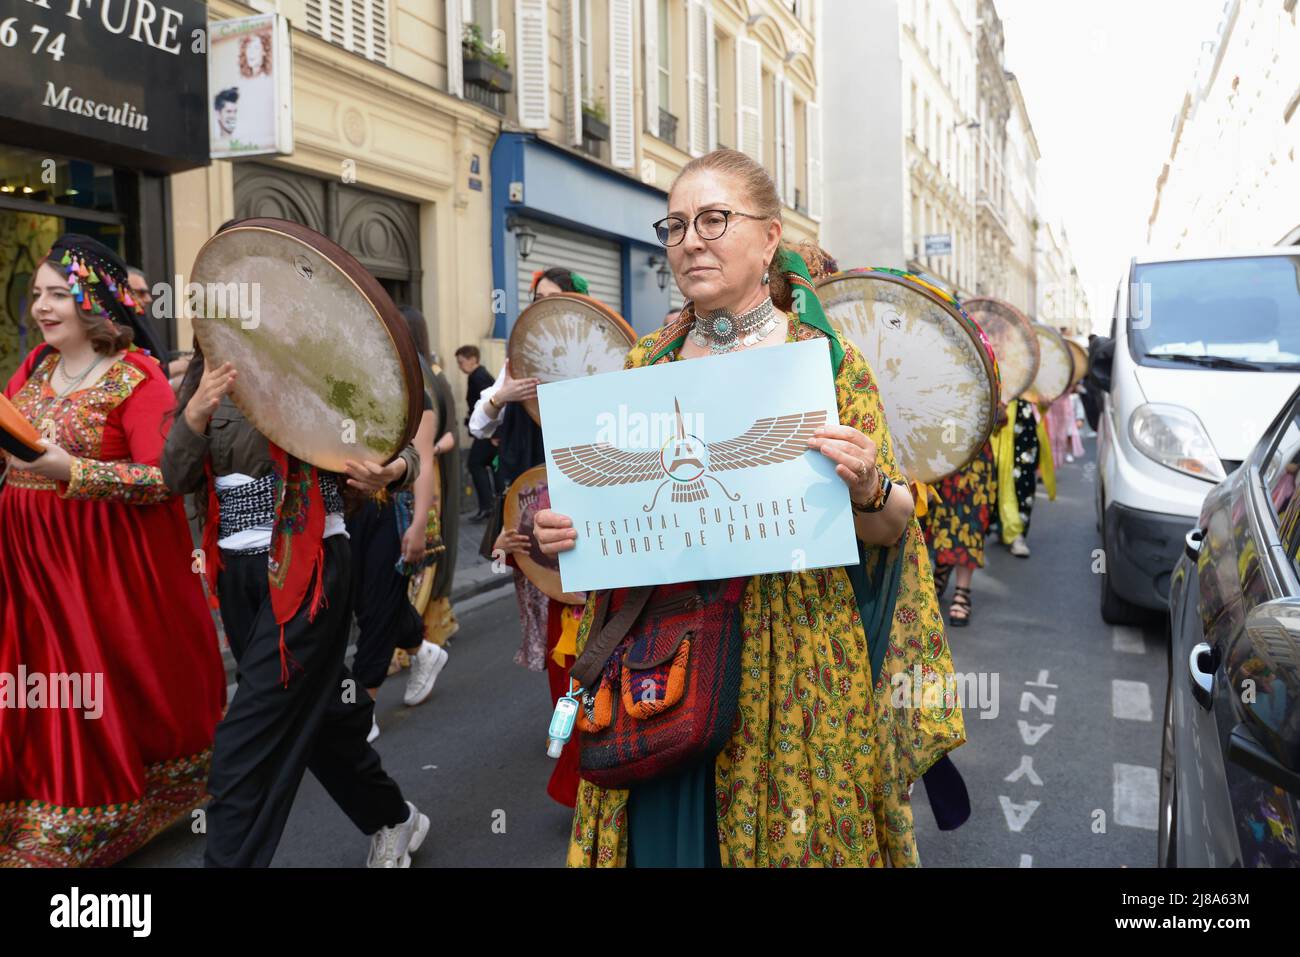 1st Festival culturel kurde à Paris. Une parade de costumes traditionnels et d'orchestre de rue a eu lieu dans le 10th arrondissement de Paris Banque D'Images